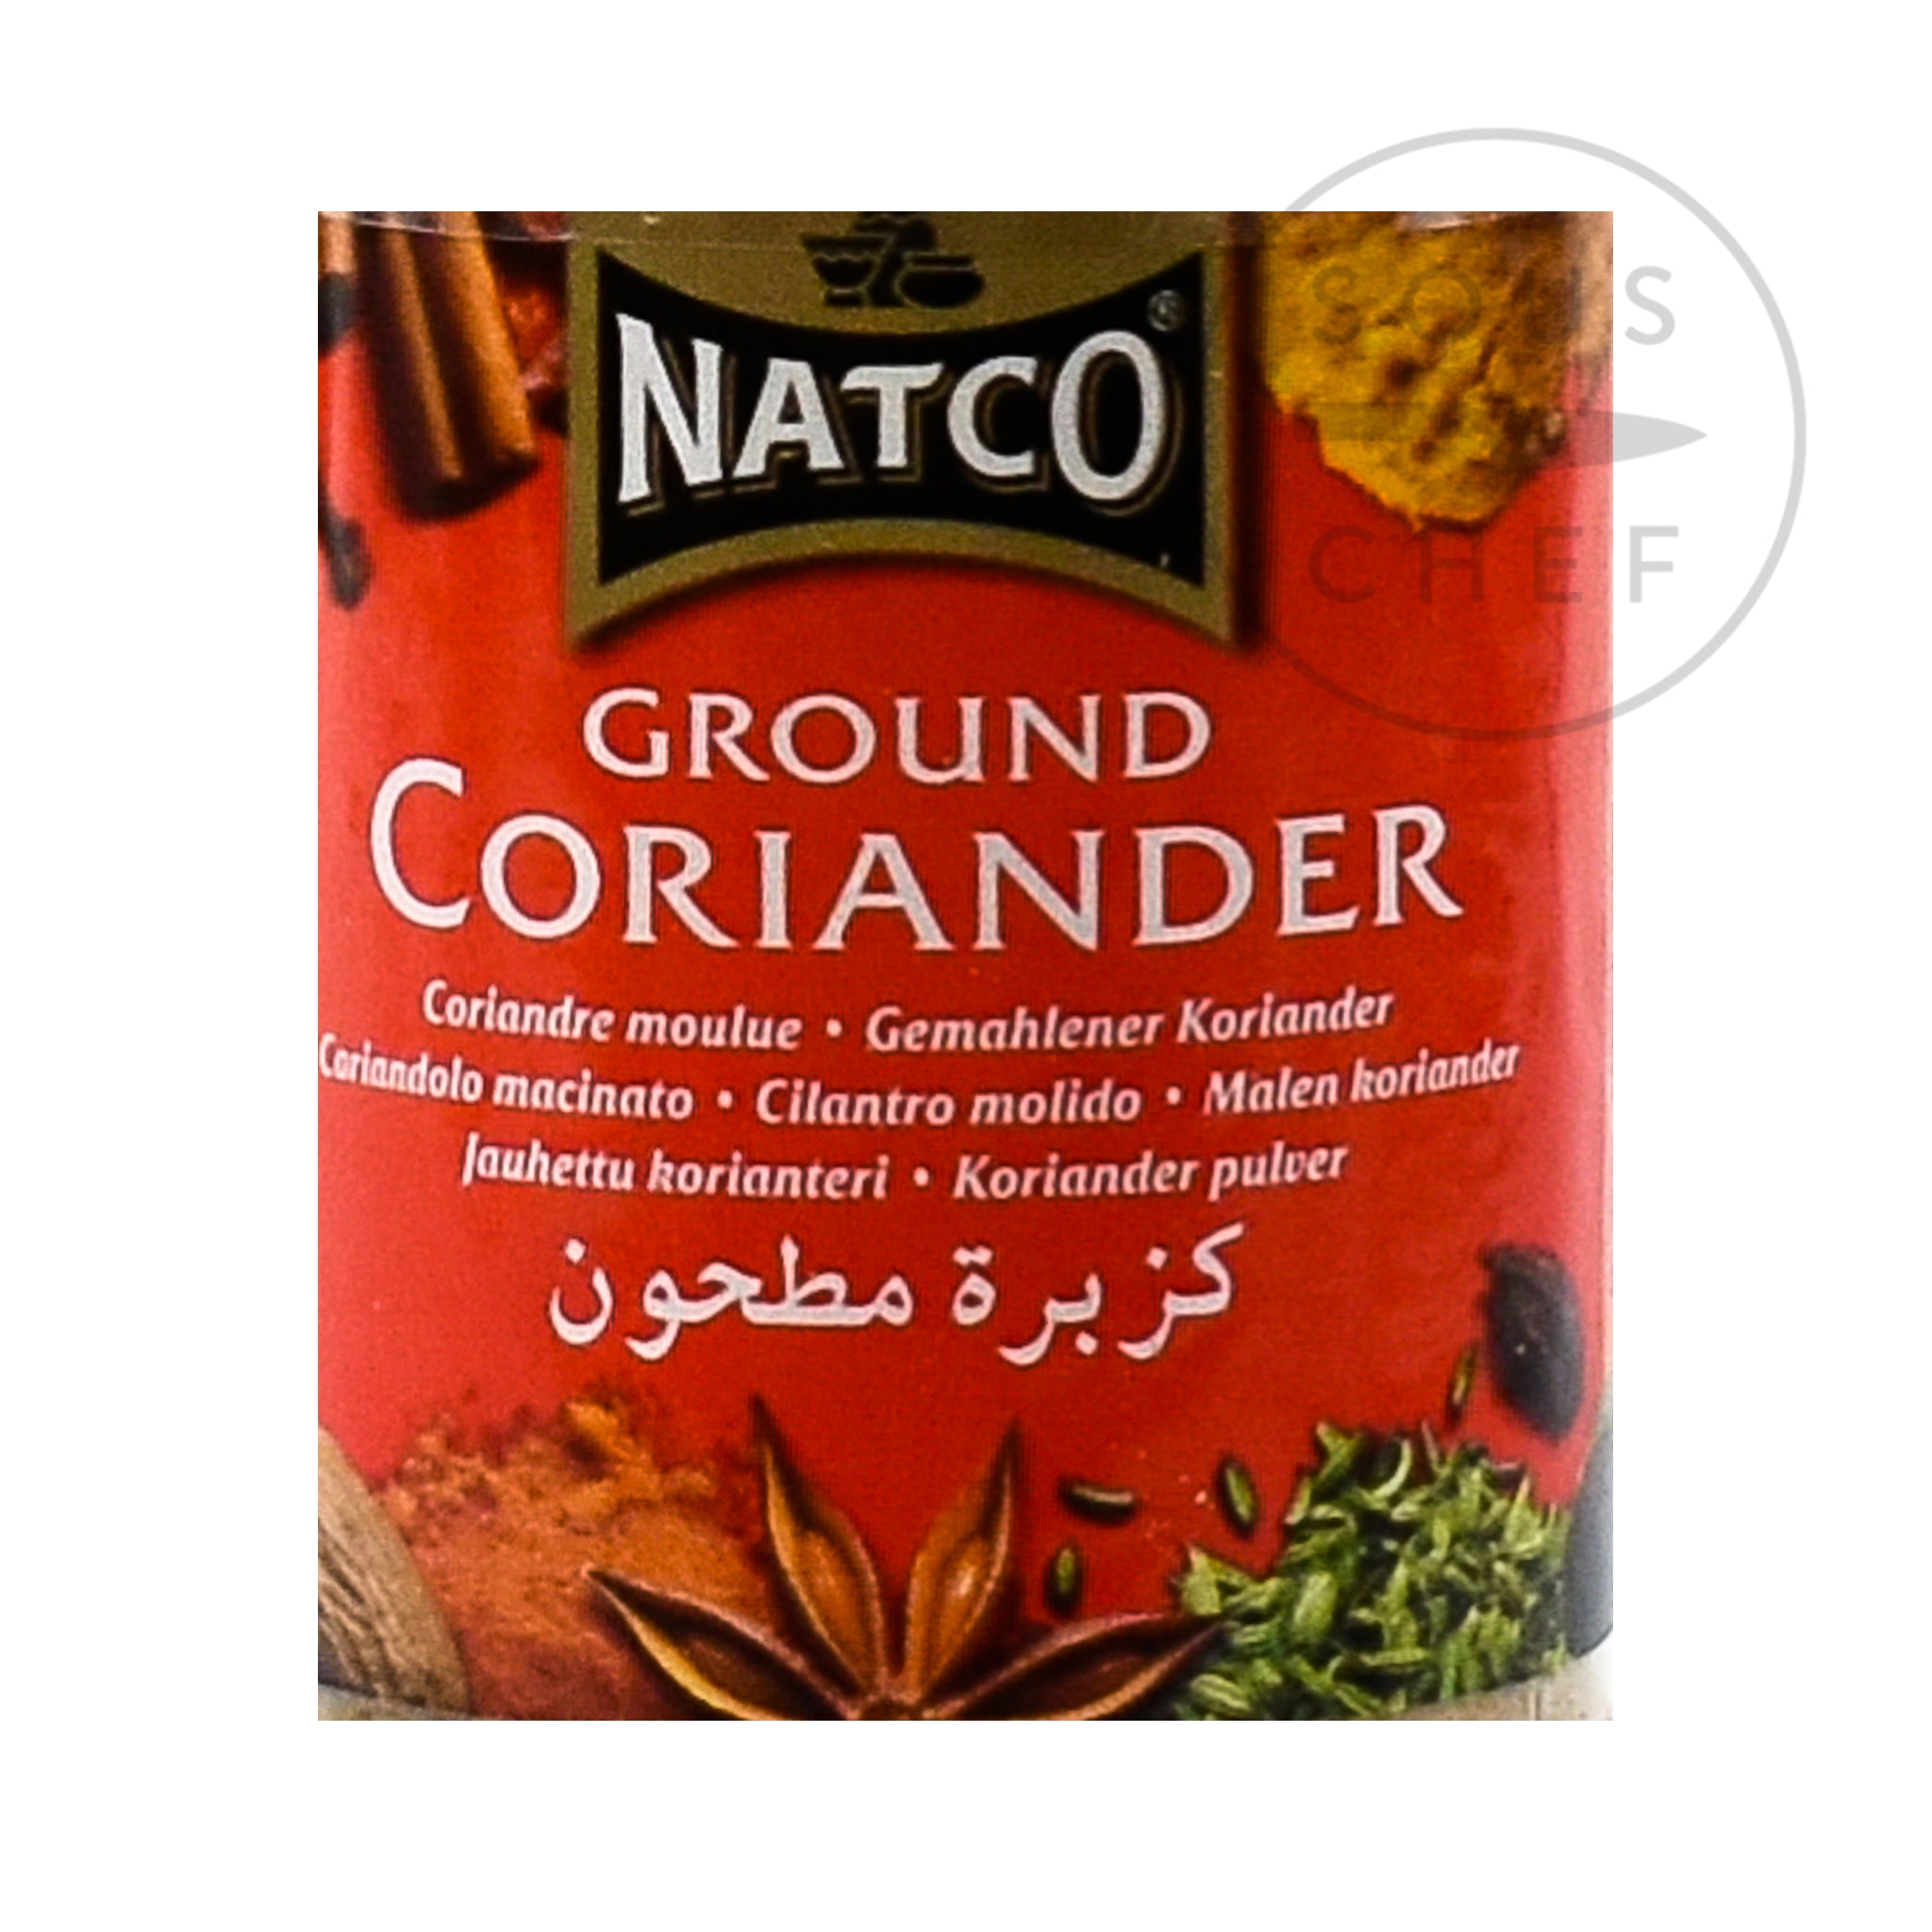 Natco Ground Coriander, 70g